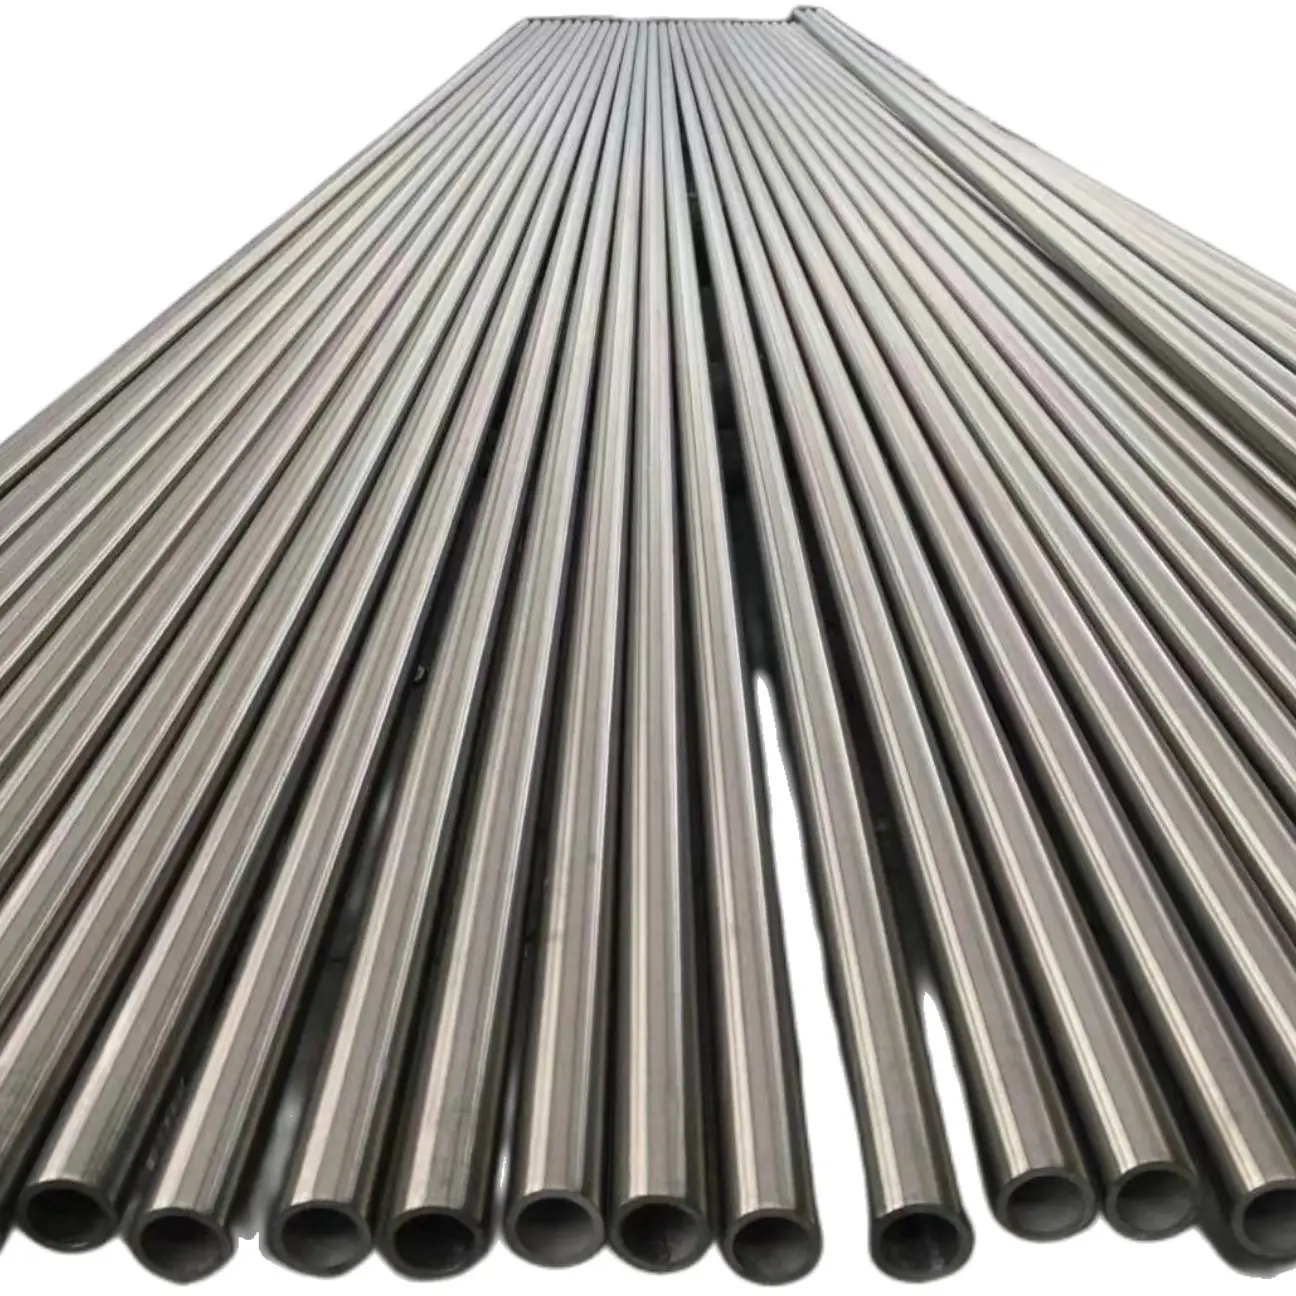 Specifiche complete da 0.02-10mm il tubo in acciaio inossidabile può essere personalizzato tubo in acciaio inossidabile a parete sottile capillare ultra-preciso